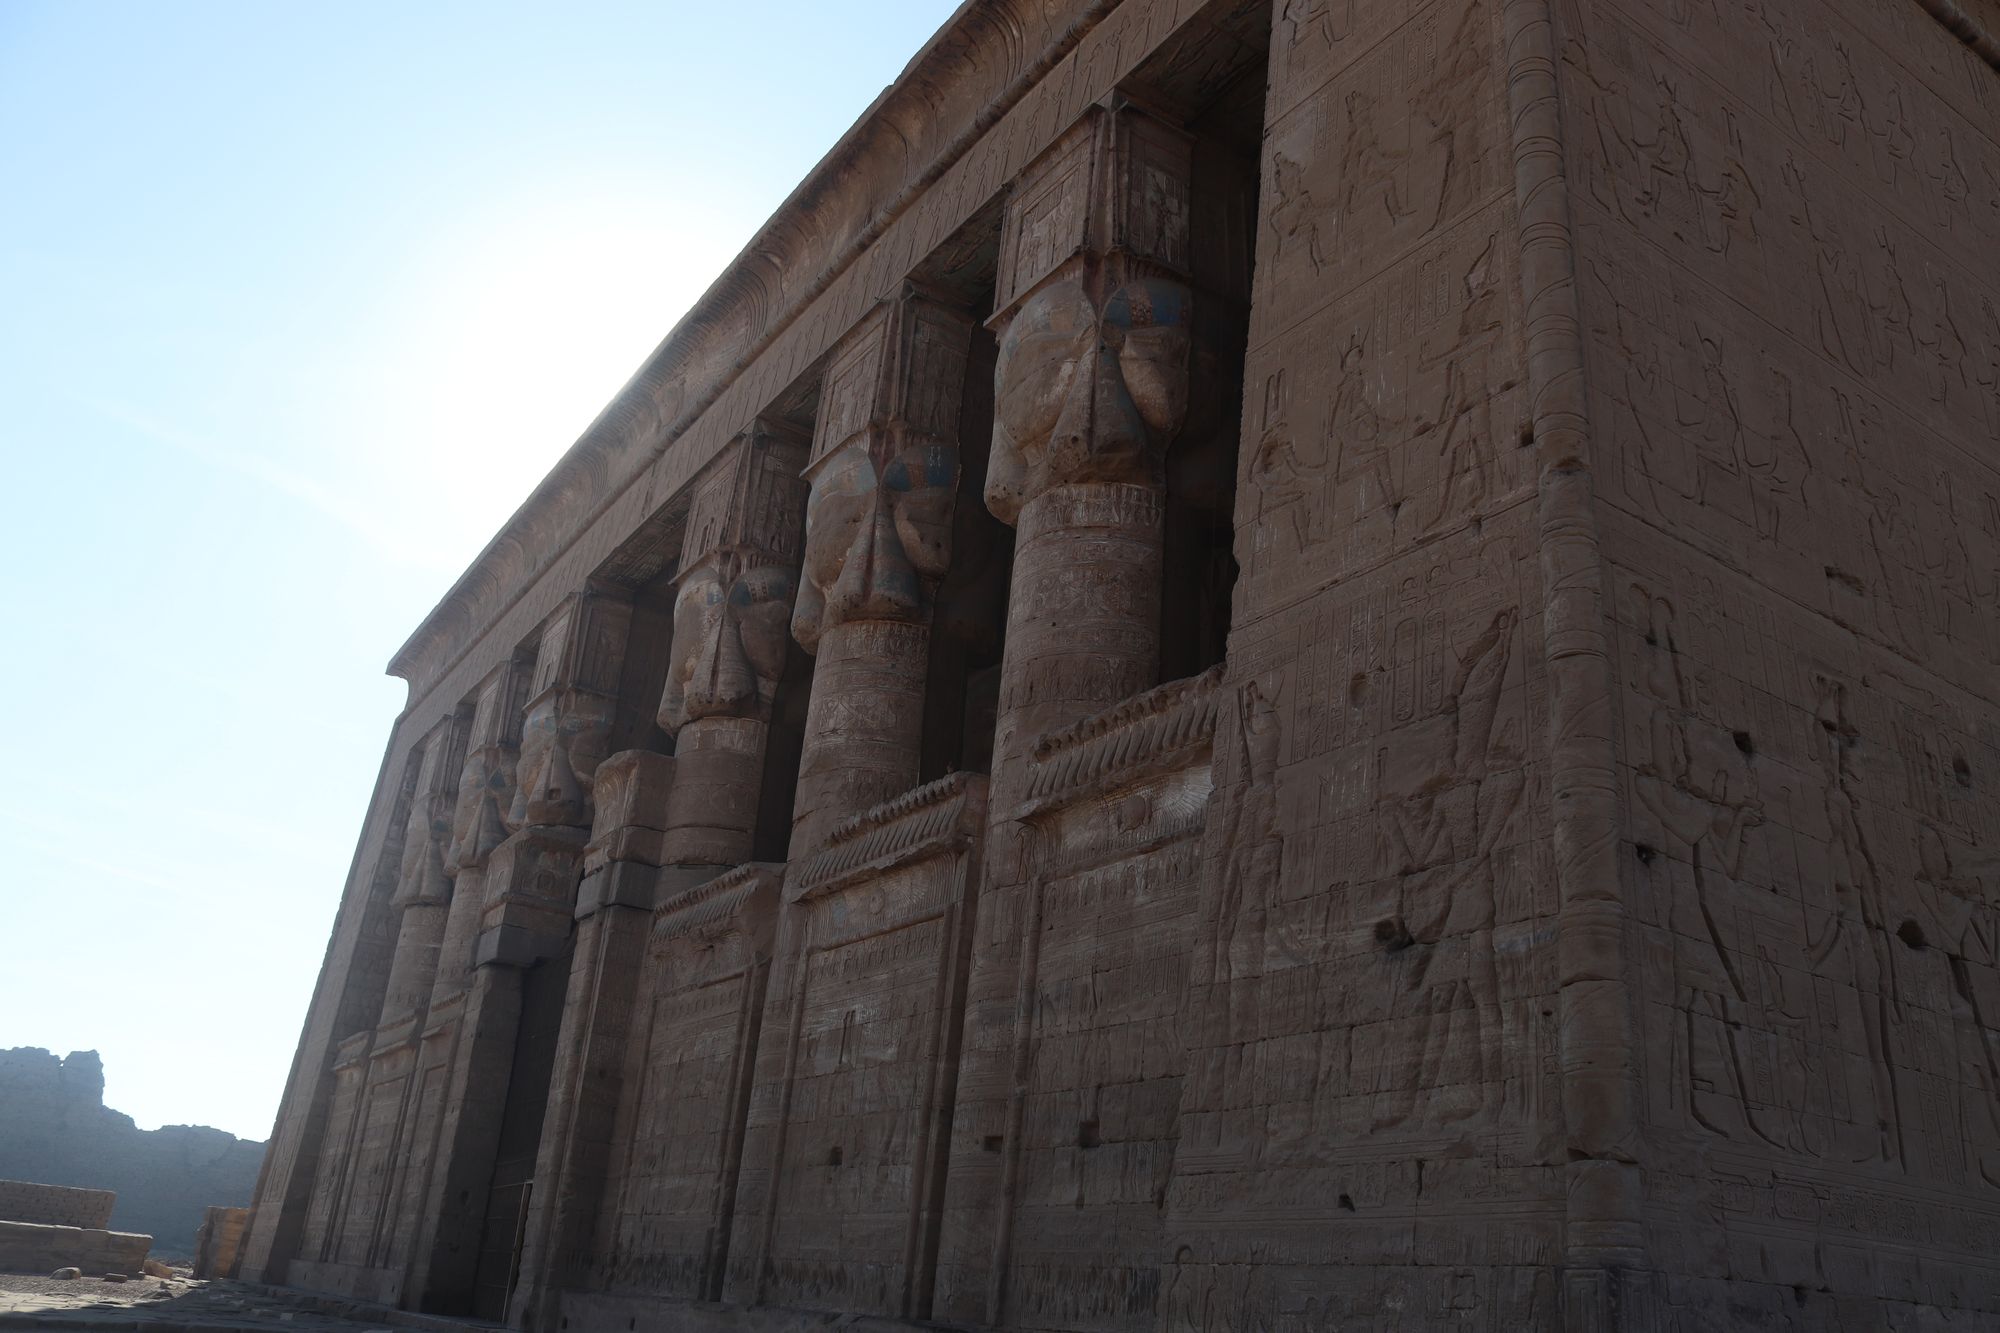 Antiguo Egipto - Templo de Hathor en Dendera - Egiptología